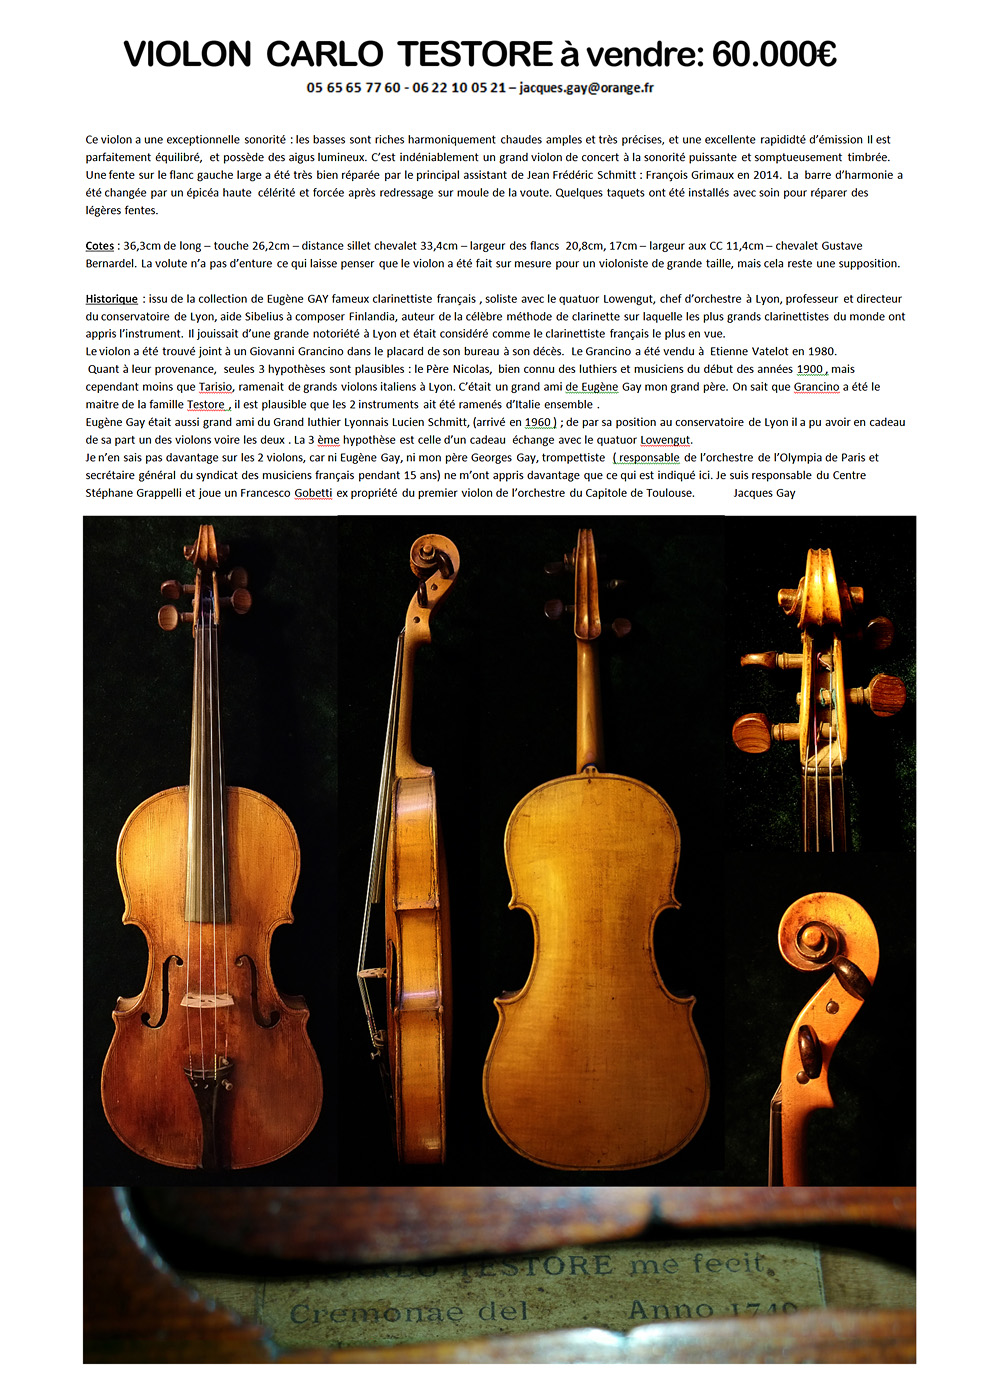 Vente violon TESTORE 1740  12 janvier 2019